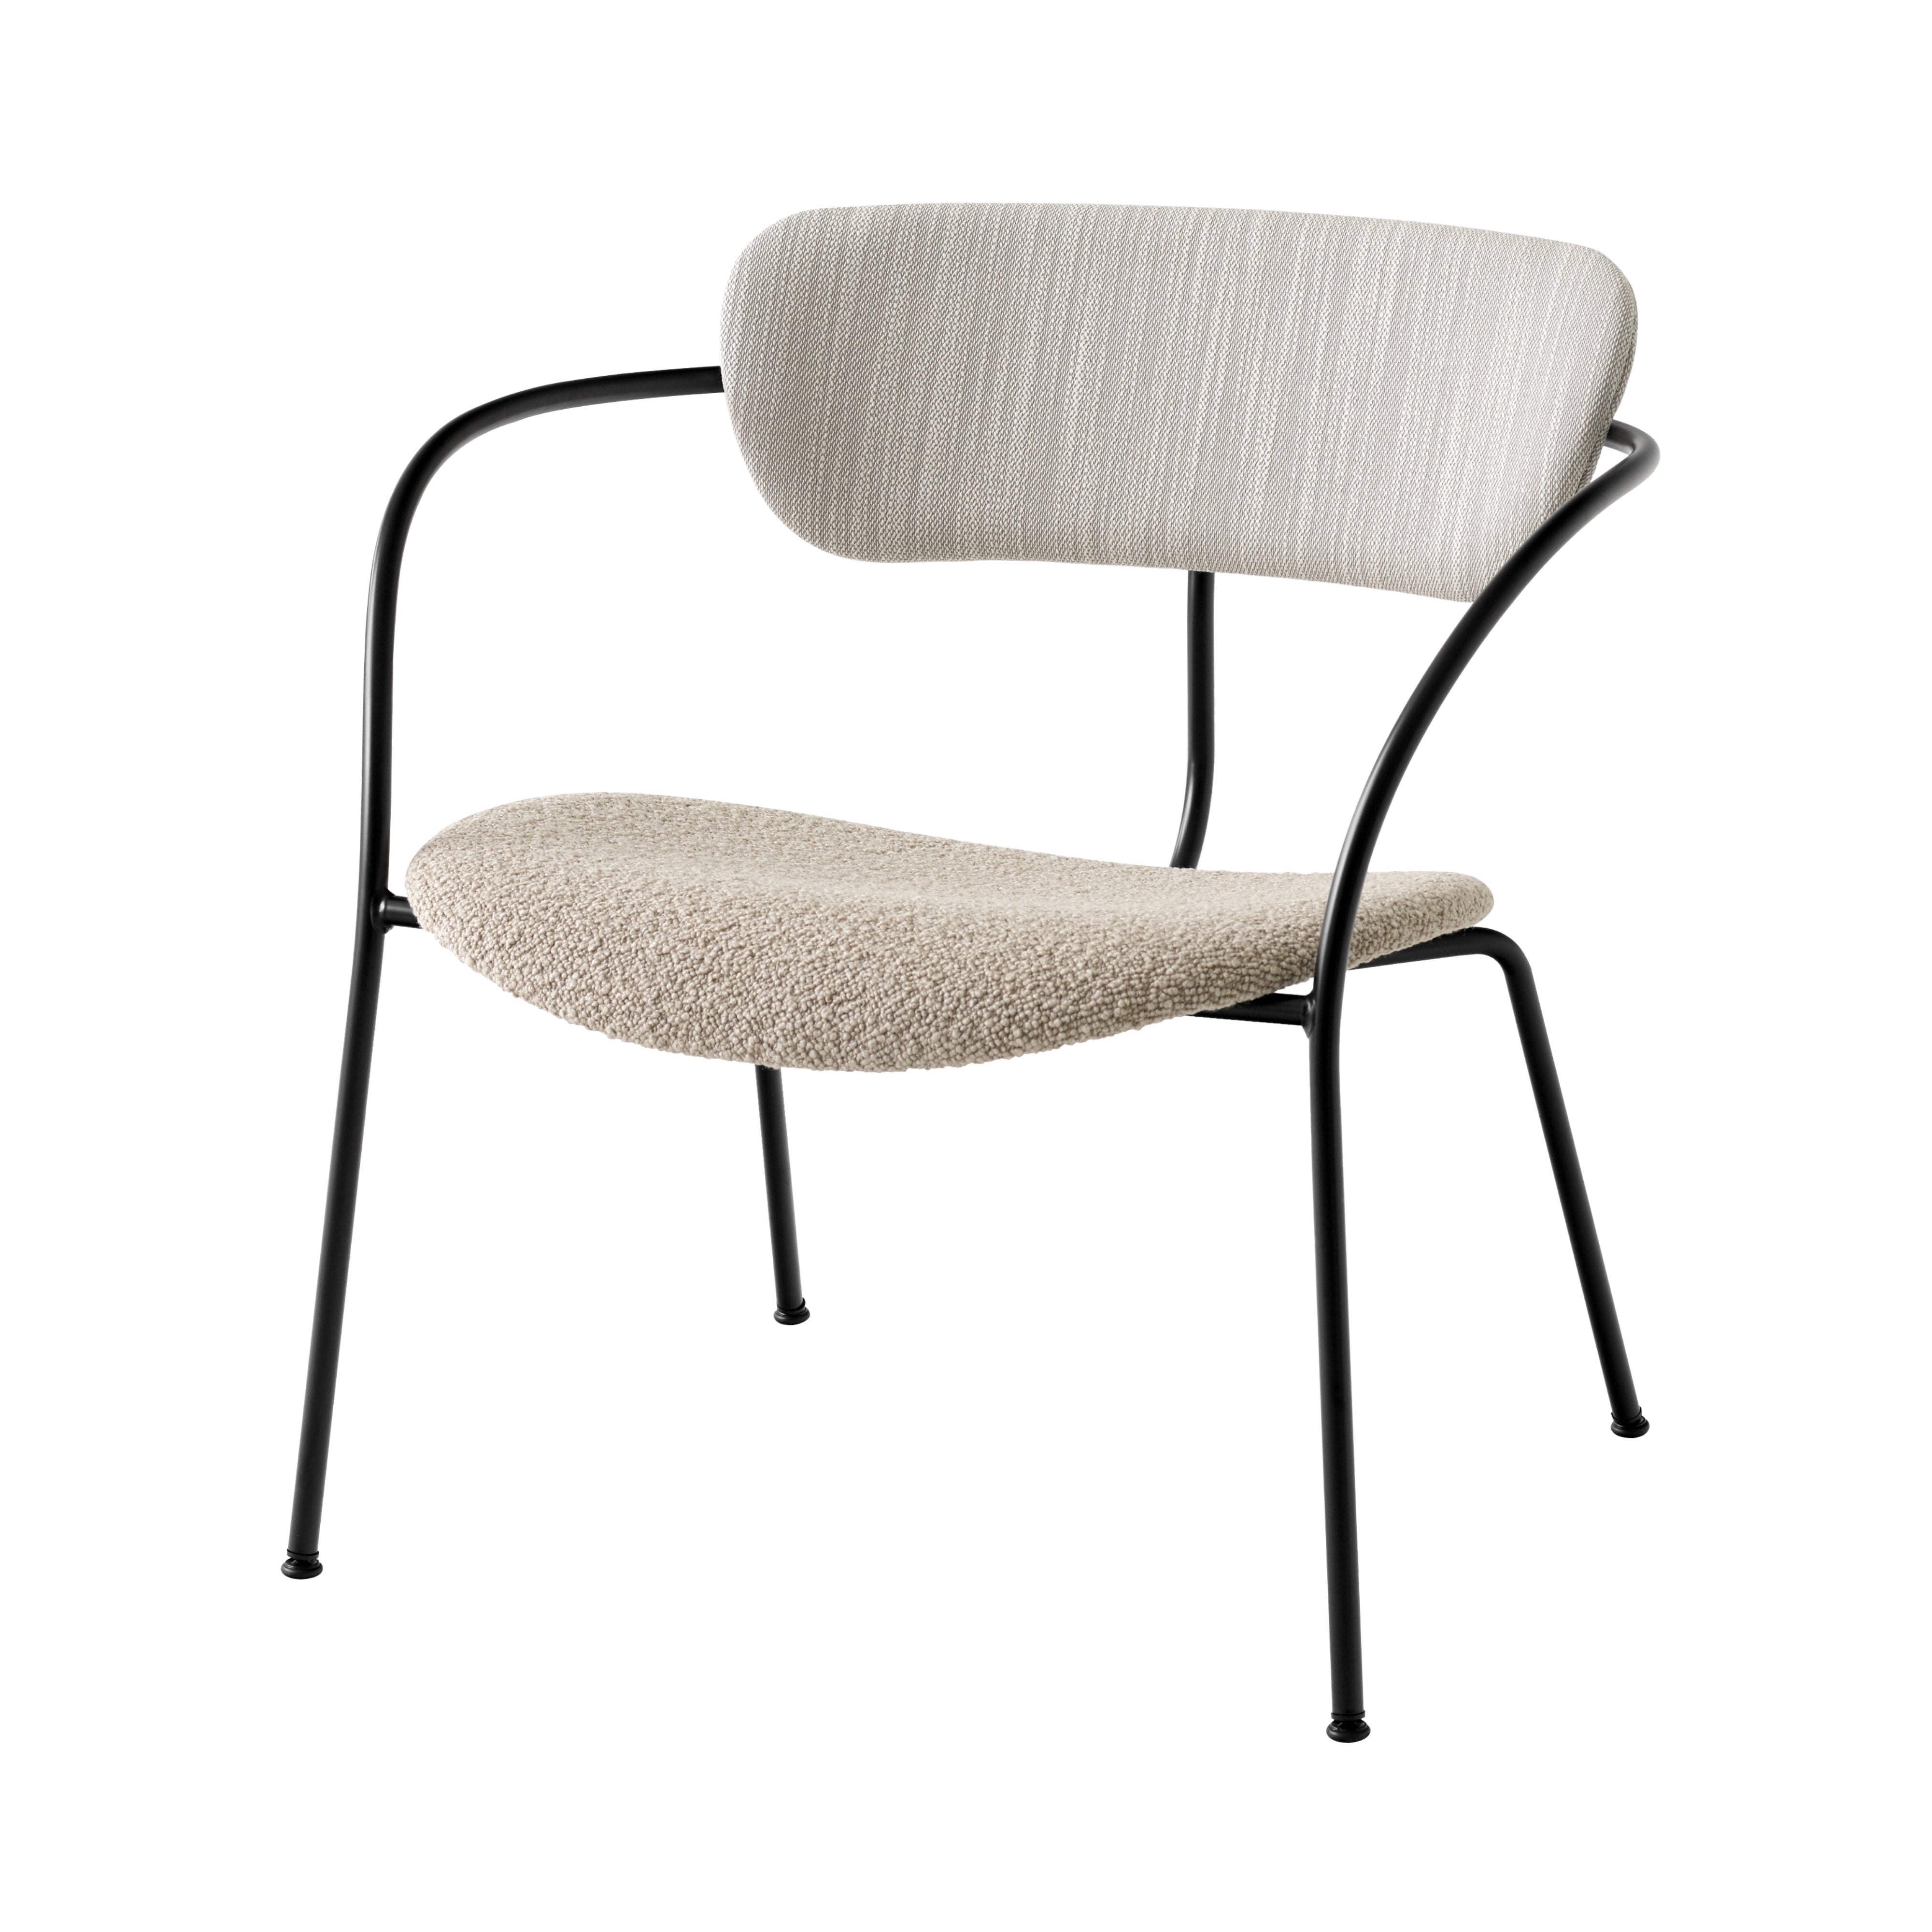 Pavilion Lounge Chair Upholstered: AV11